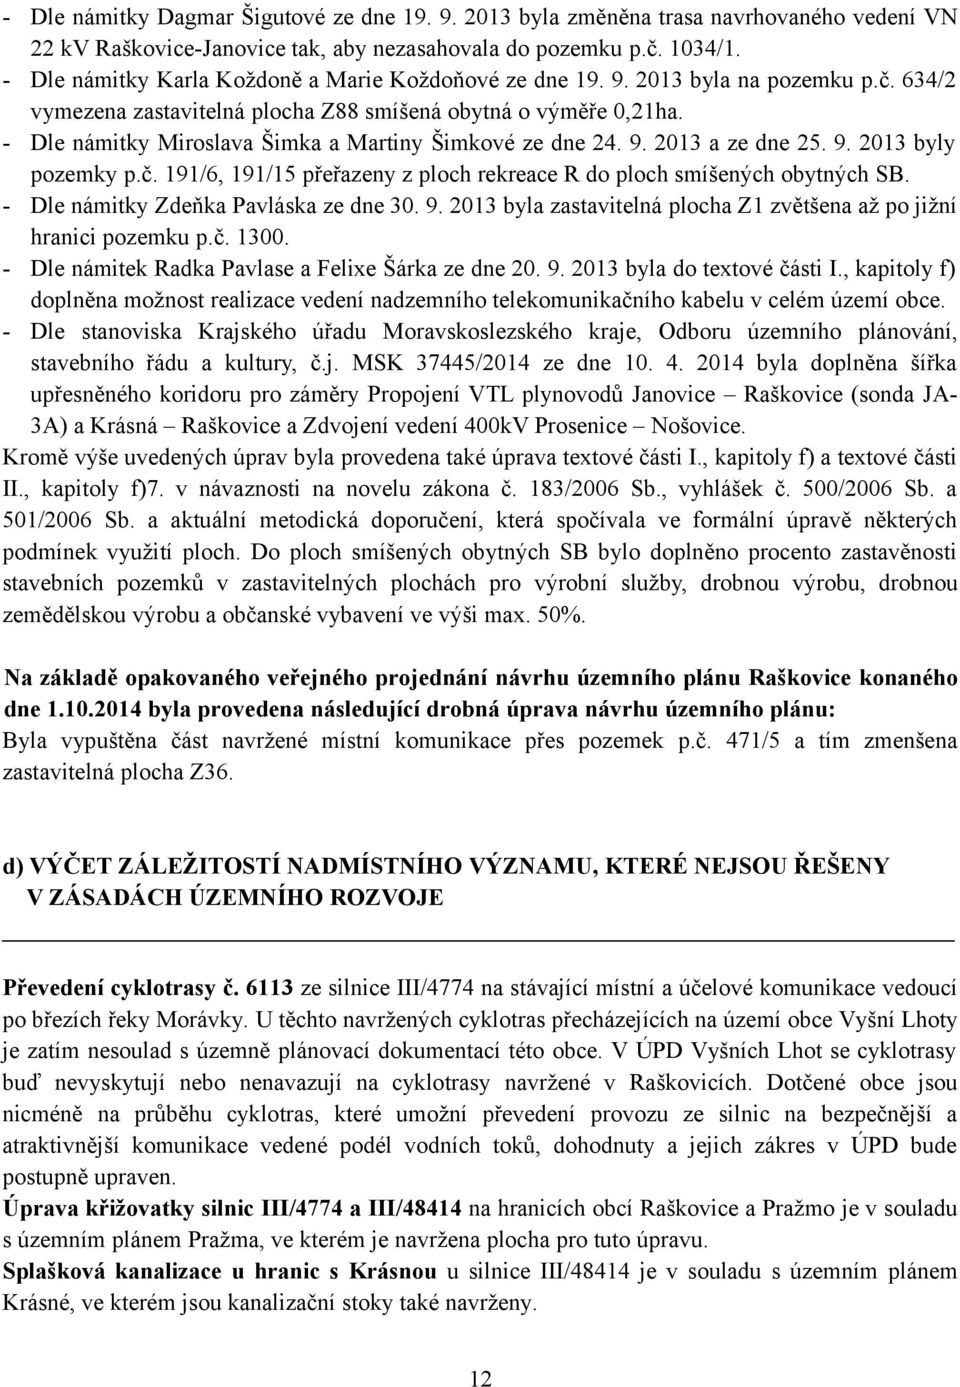 - Dle námitky Miroslava Šimka a Martiny Šimkové ze dne 24. 9. 2013 a ze dne 25. 9. 2013 byly pozemky p.č. 191/6, 191/15 přeřazeny z ploch rekreace R do ploch smíšených obytných SB.